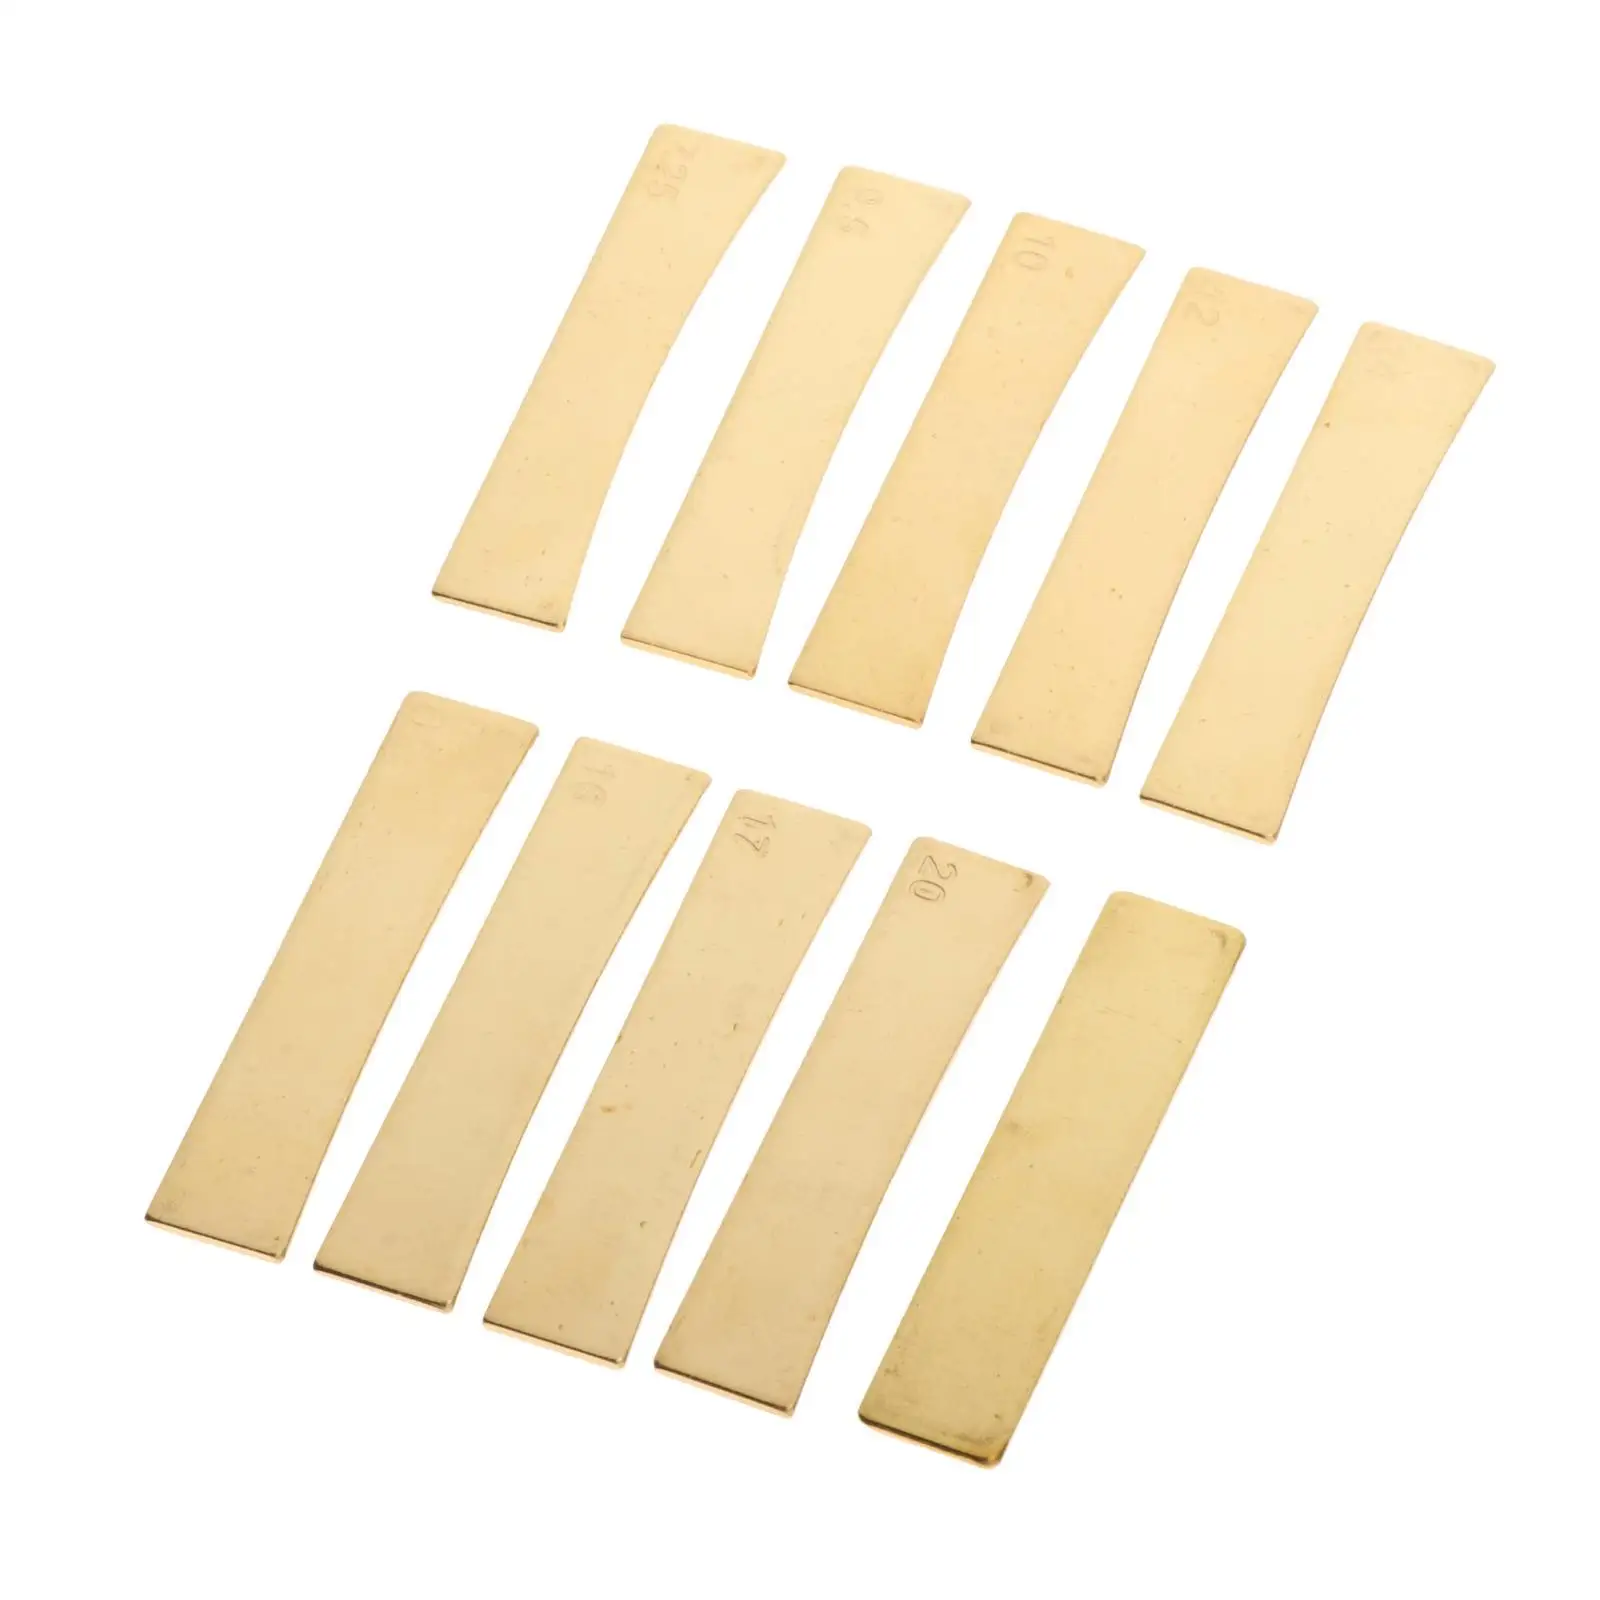 10 Pcs / Lot Gold Brass Fingerboard Fret Press Caul Inserts  Tool